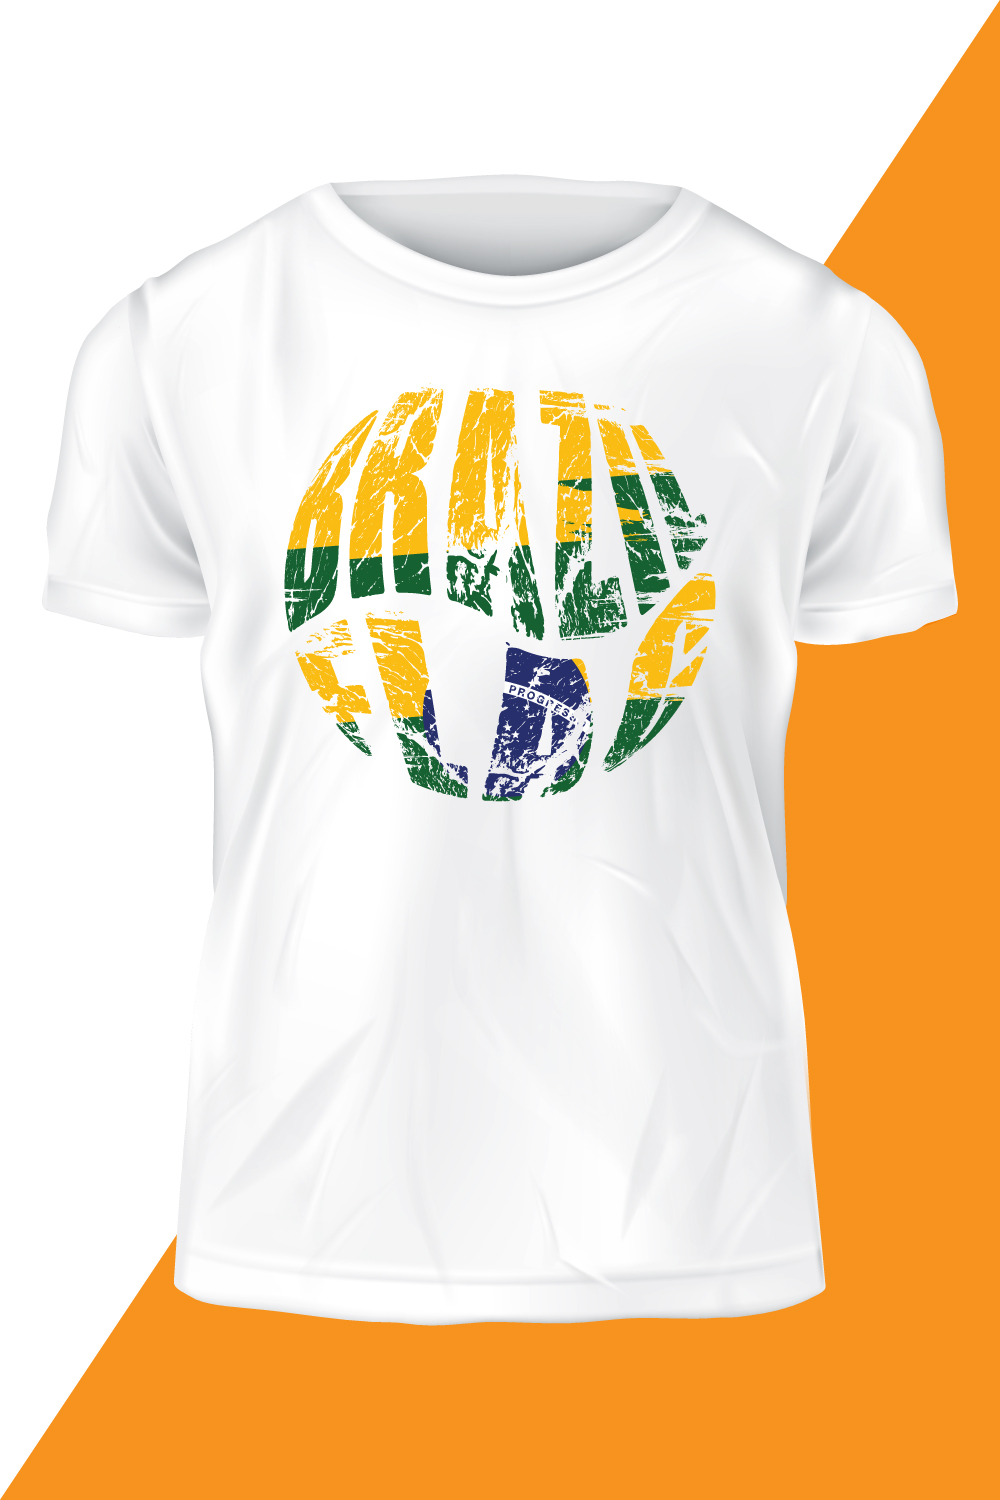 Ball Brazil Flag T-shirt Design pinterest image.